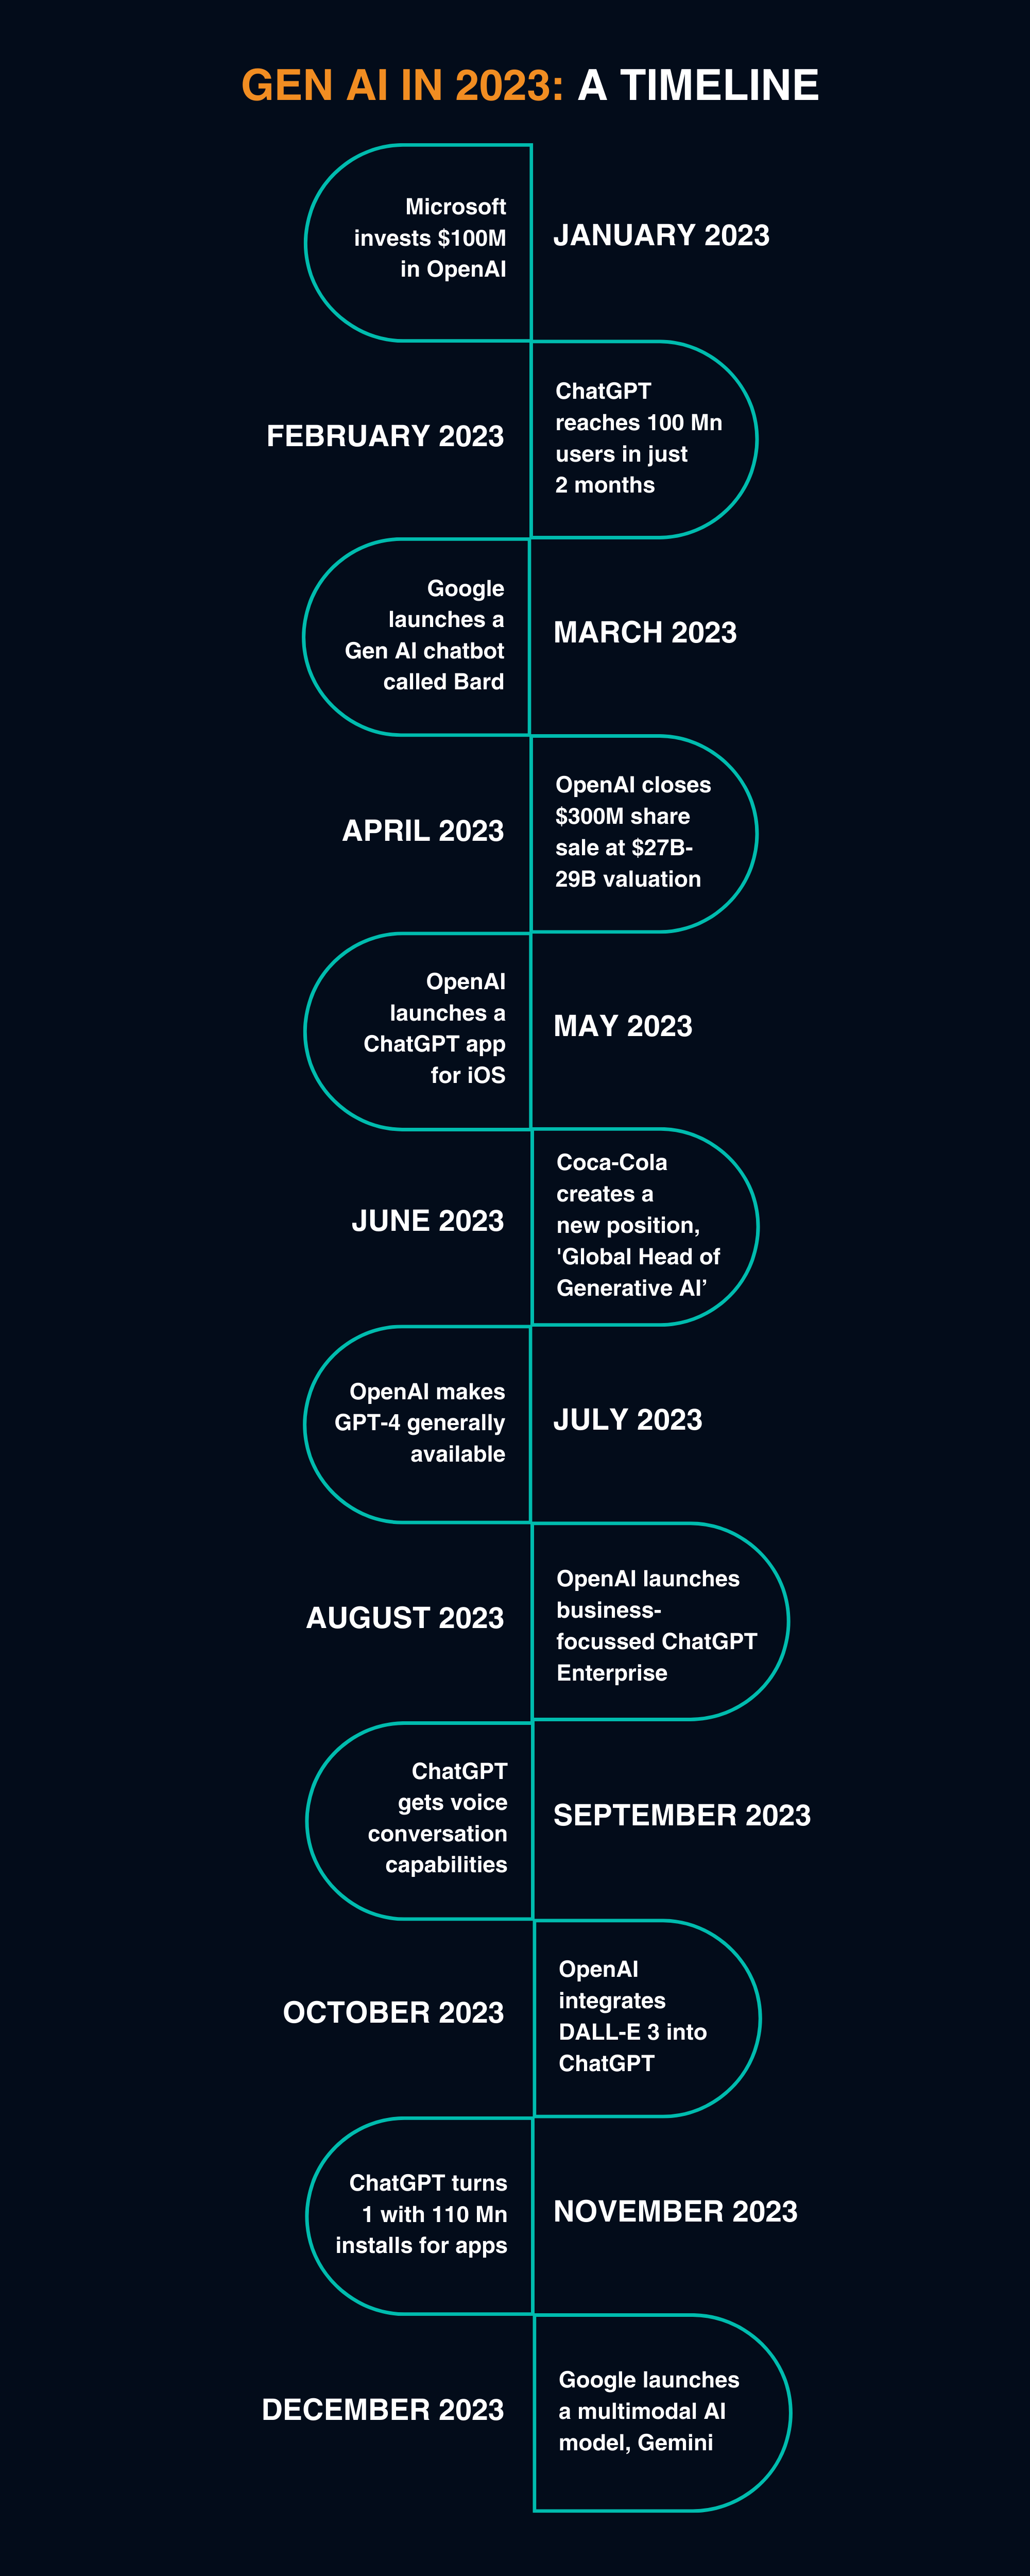 Gen AI in 2023 Timeline